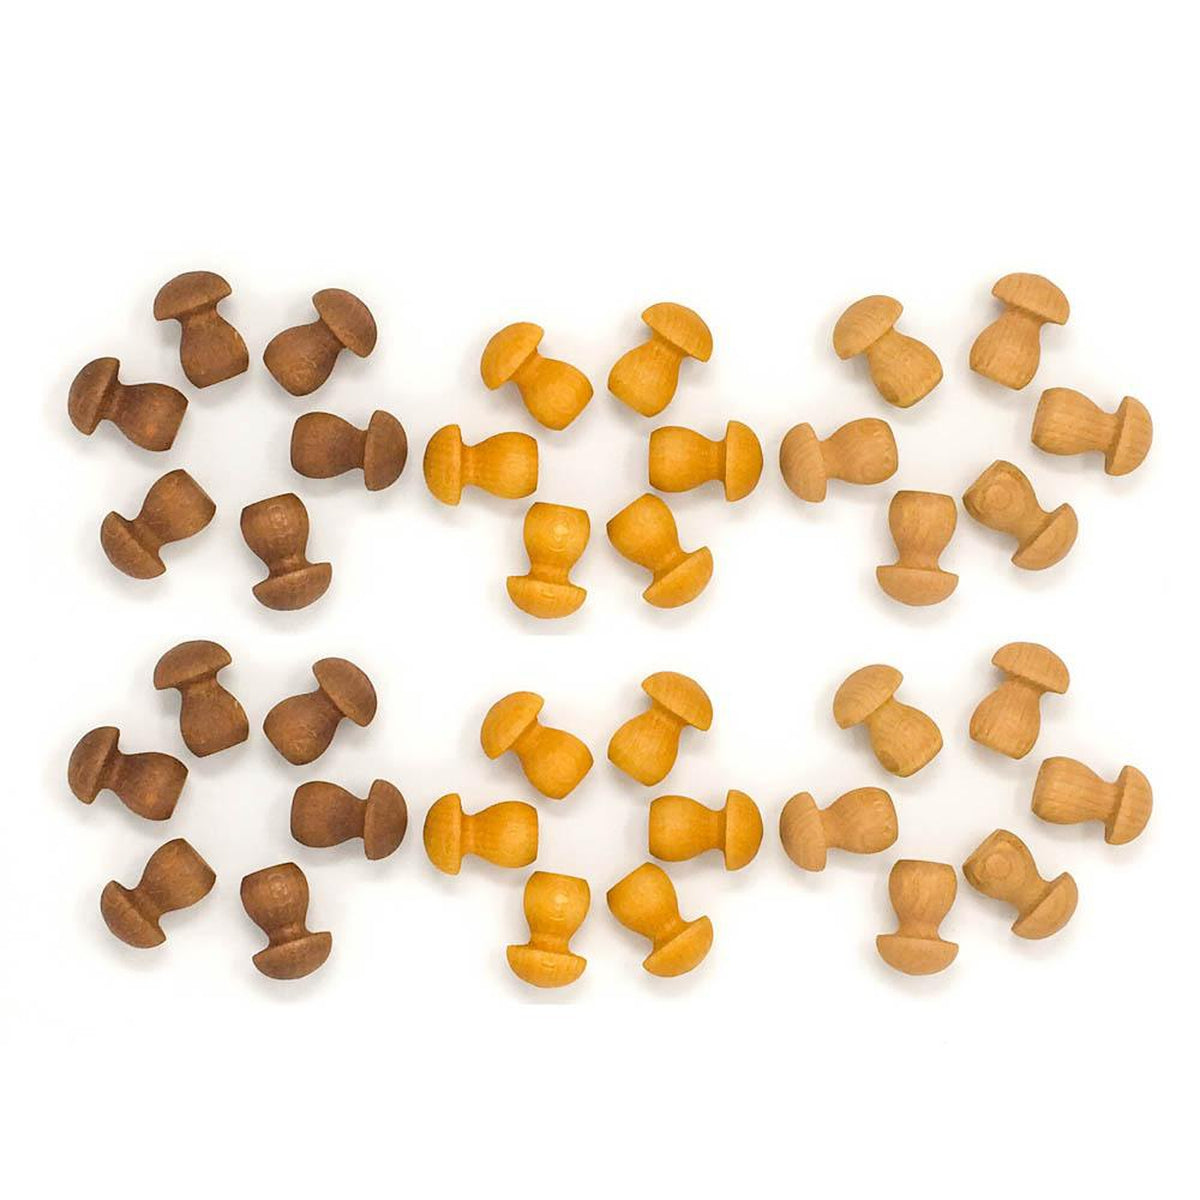 Grapat wood mandala mini mushrooms 36 pieces brown-blocks & building sets-Grapat-Dilly Dally Kids